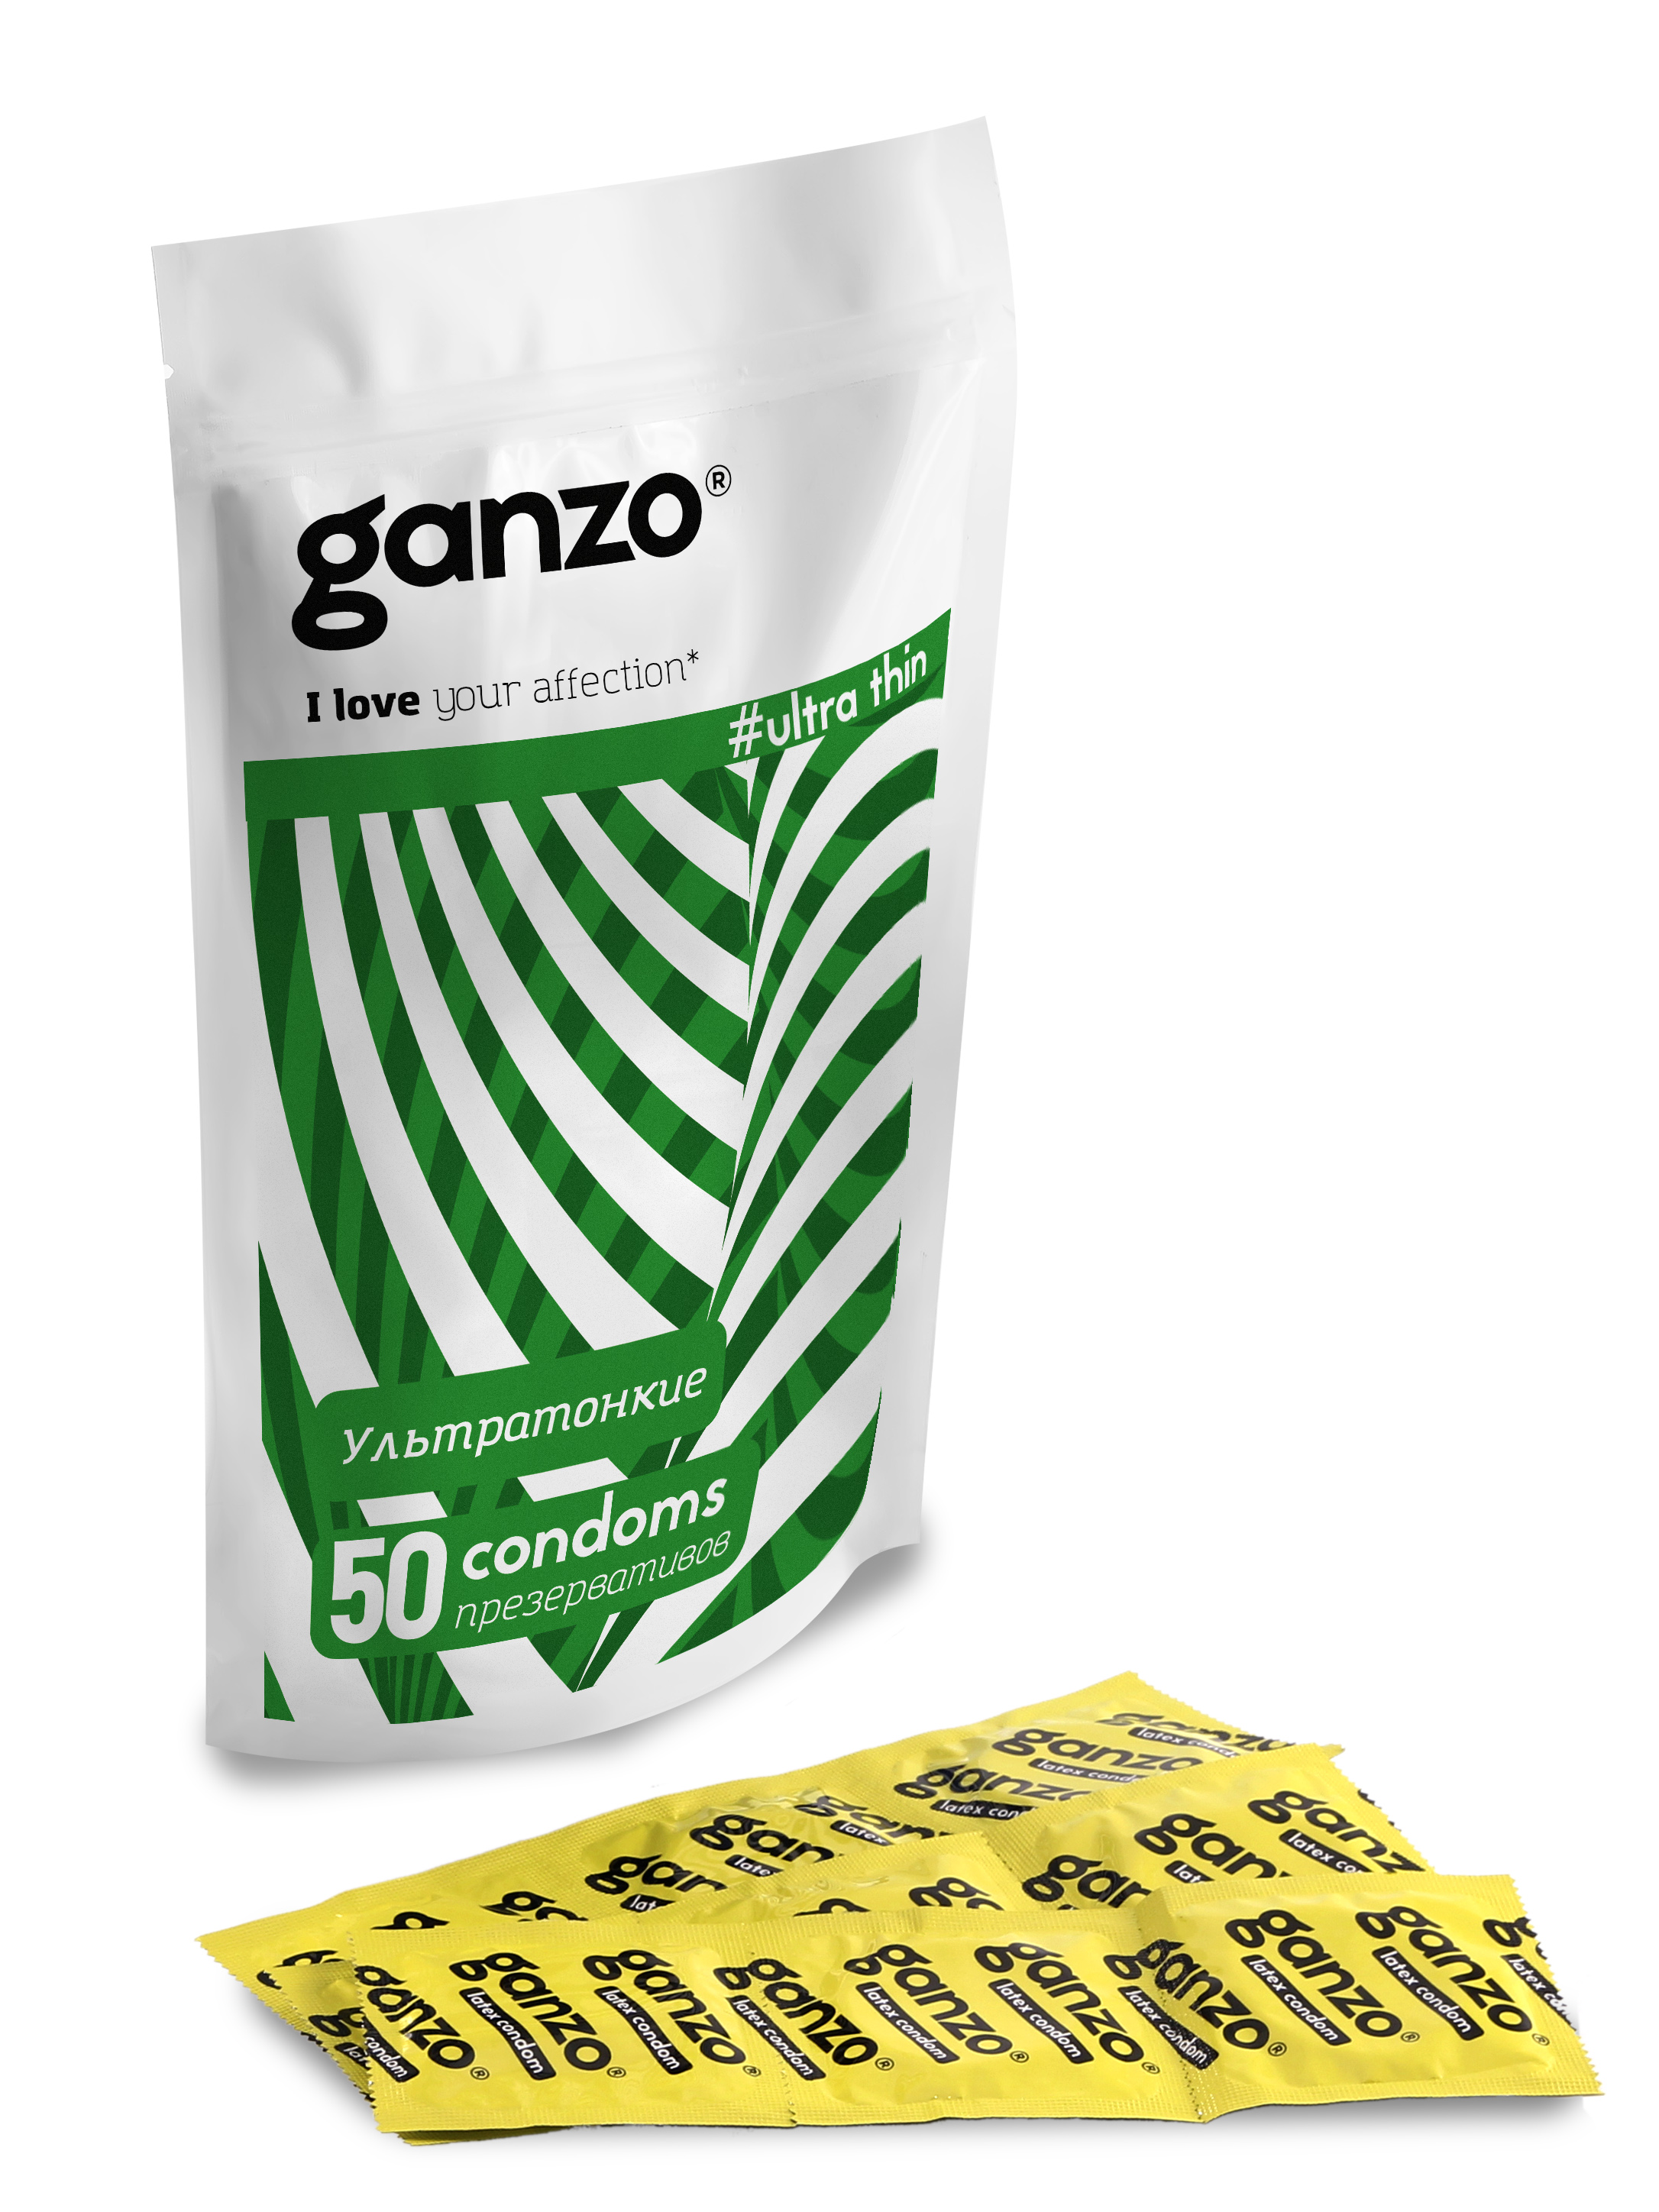 Купить Презервативы GANZO Ultra thin, No50 (Ультра тонкие, 50шт. в Дой-Пак), Презервативы GANZO Ultra thin Ультра тонкие 50 шт., латекс